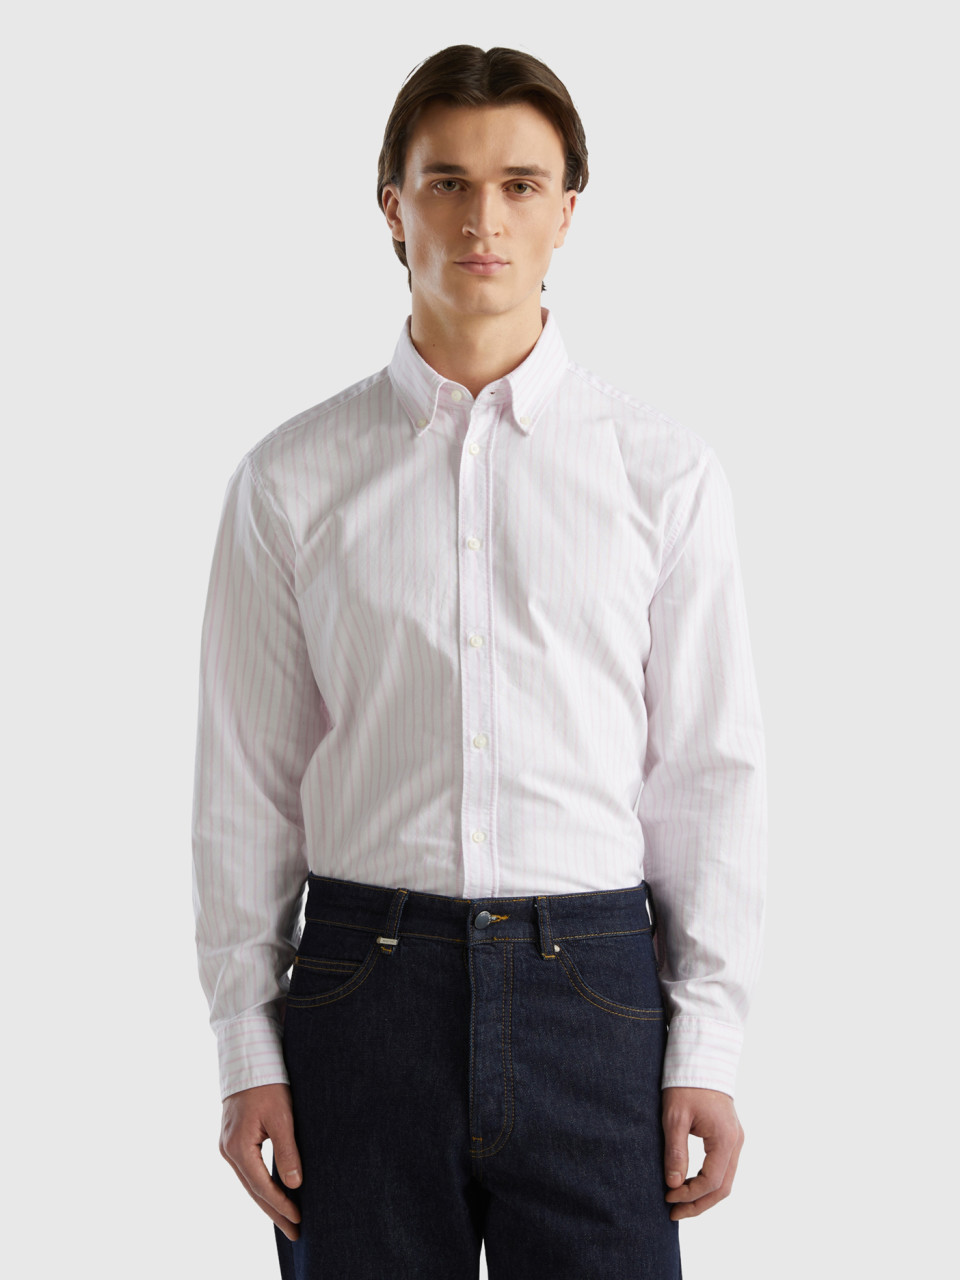 Benetton, 100% Cotton Striped Shirt, White, Men